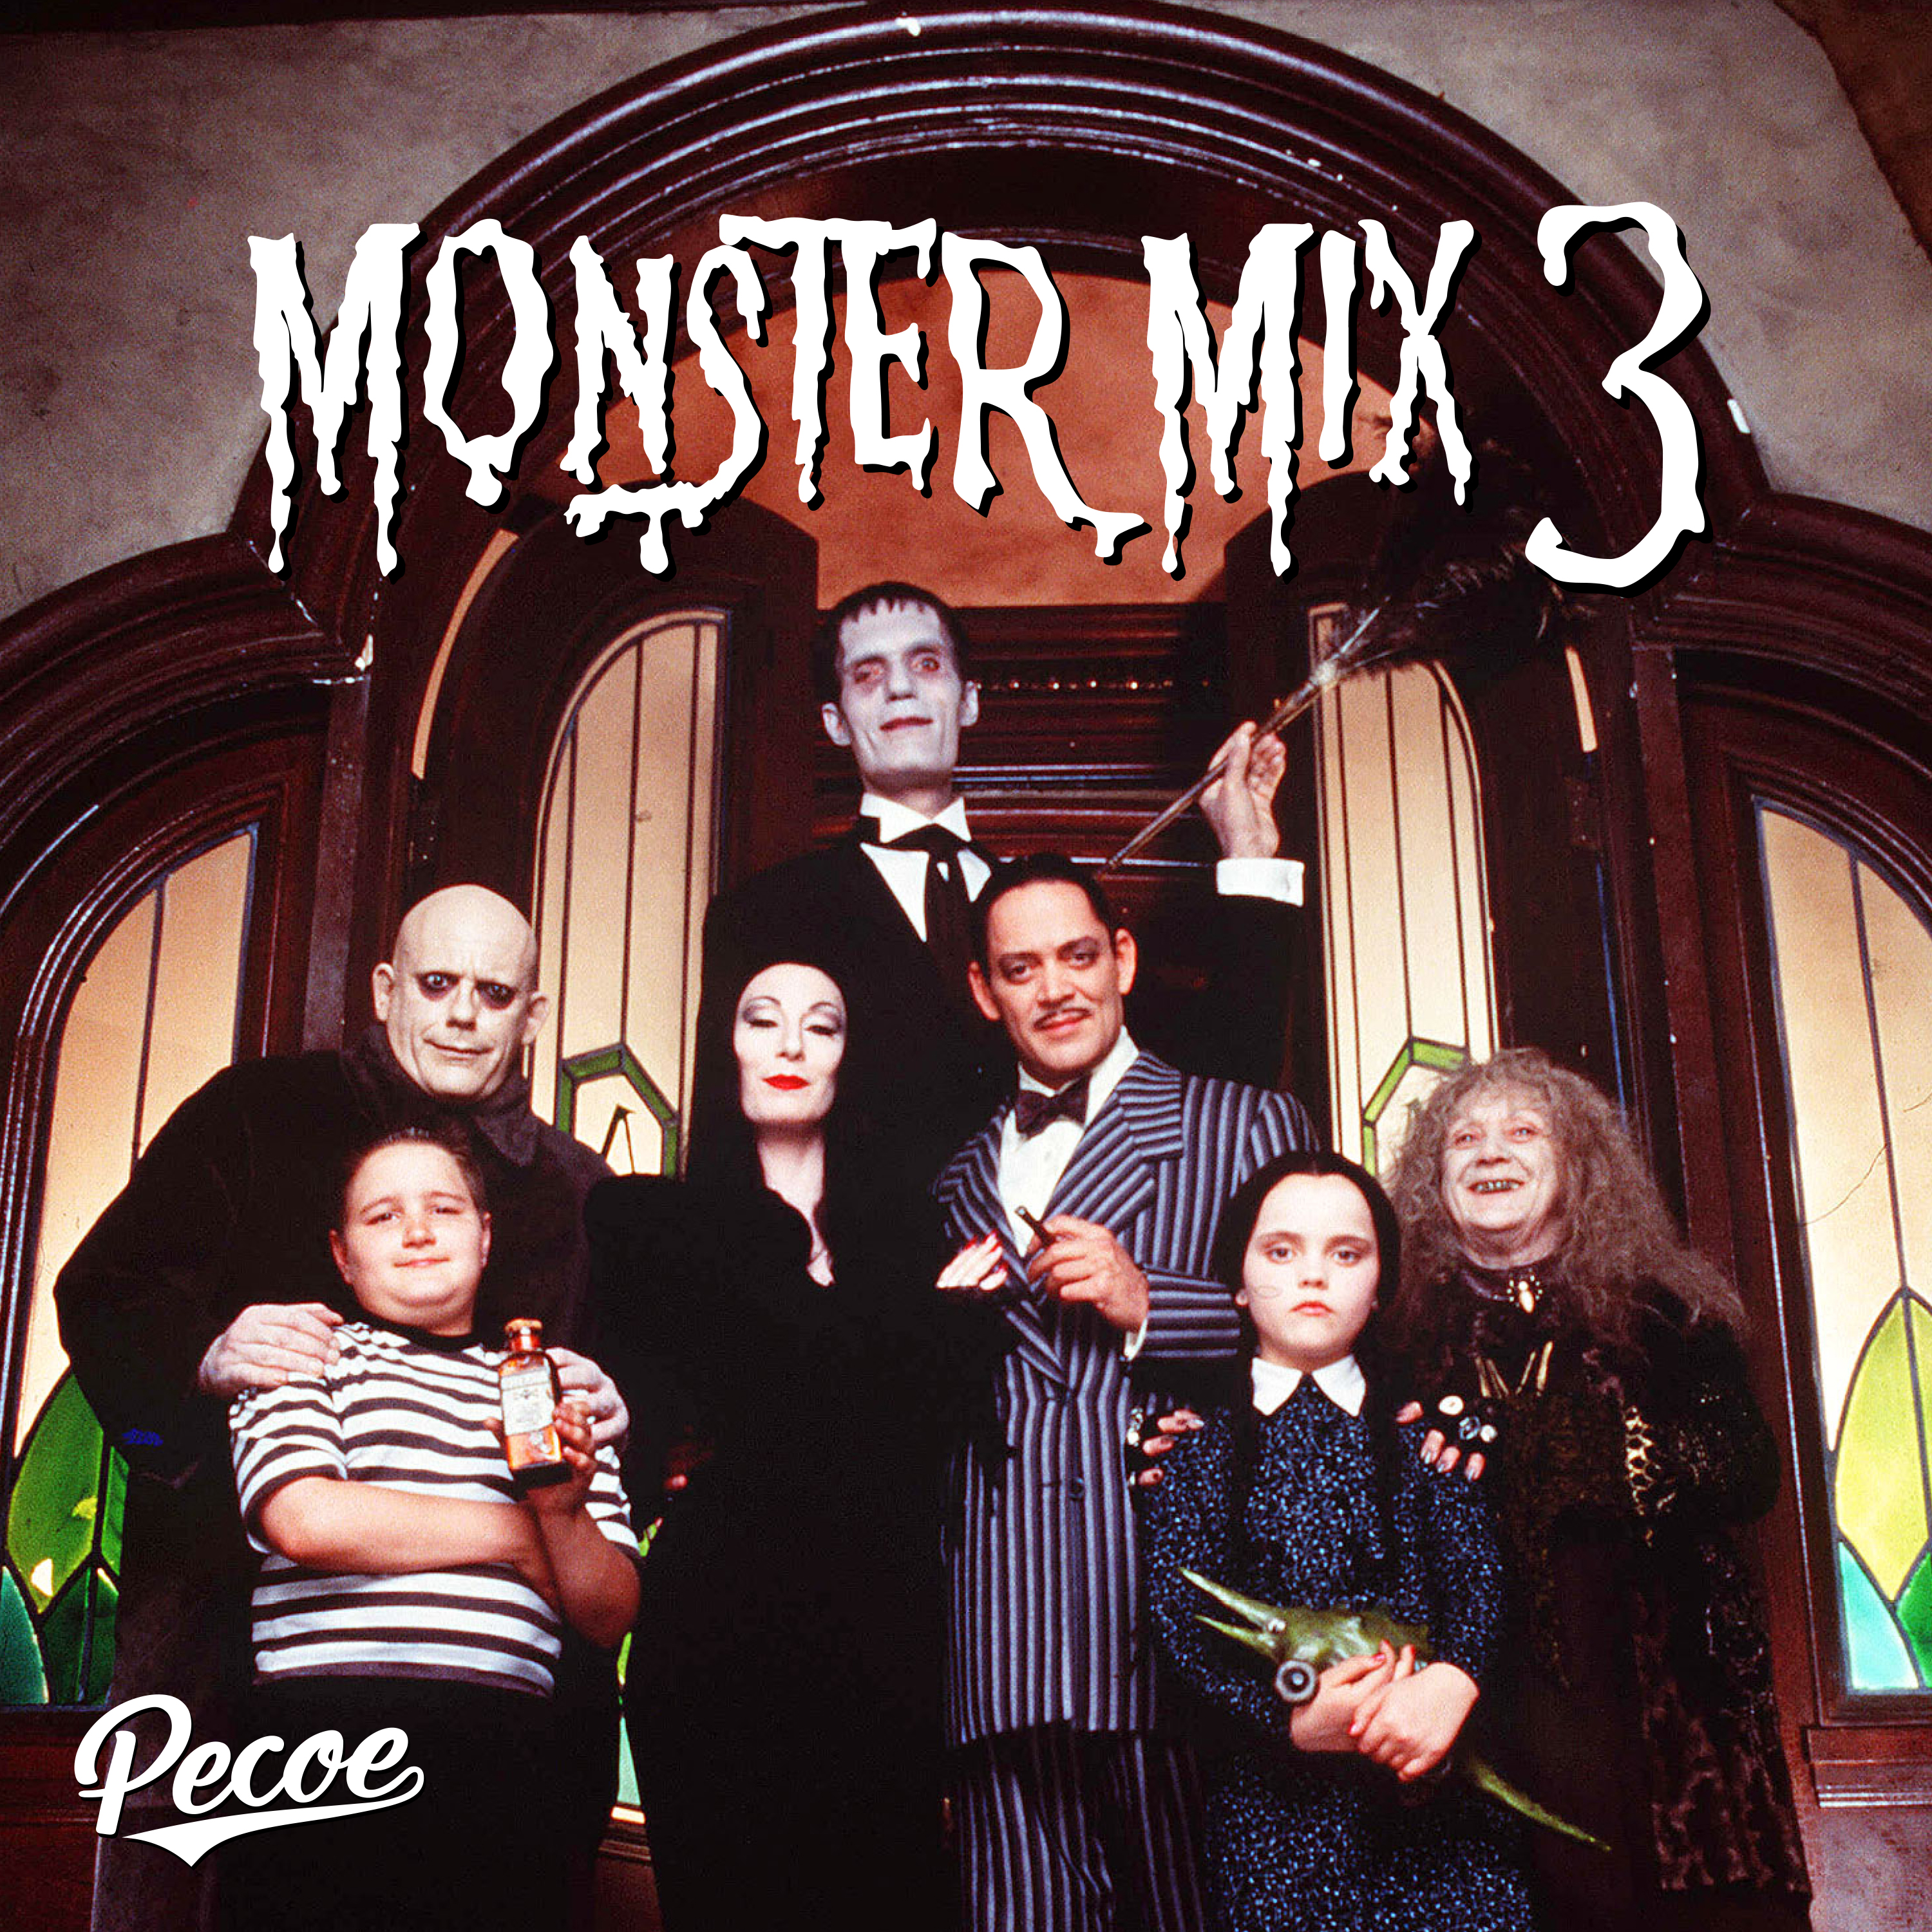 ဒေါင်းလုပ် Pecoe - Monster Mix 3